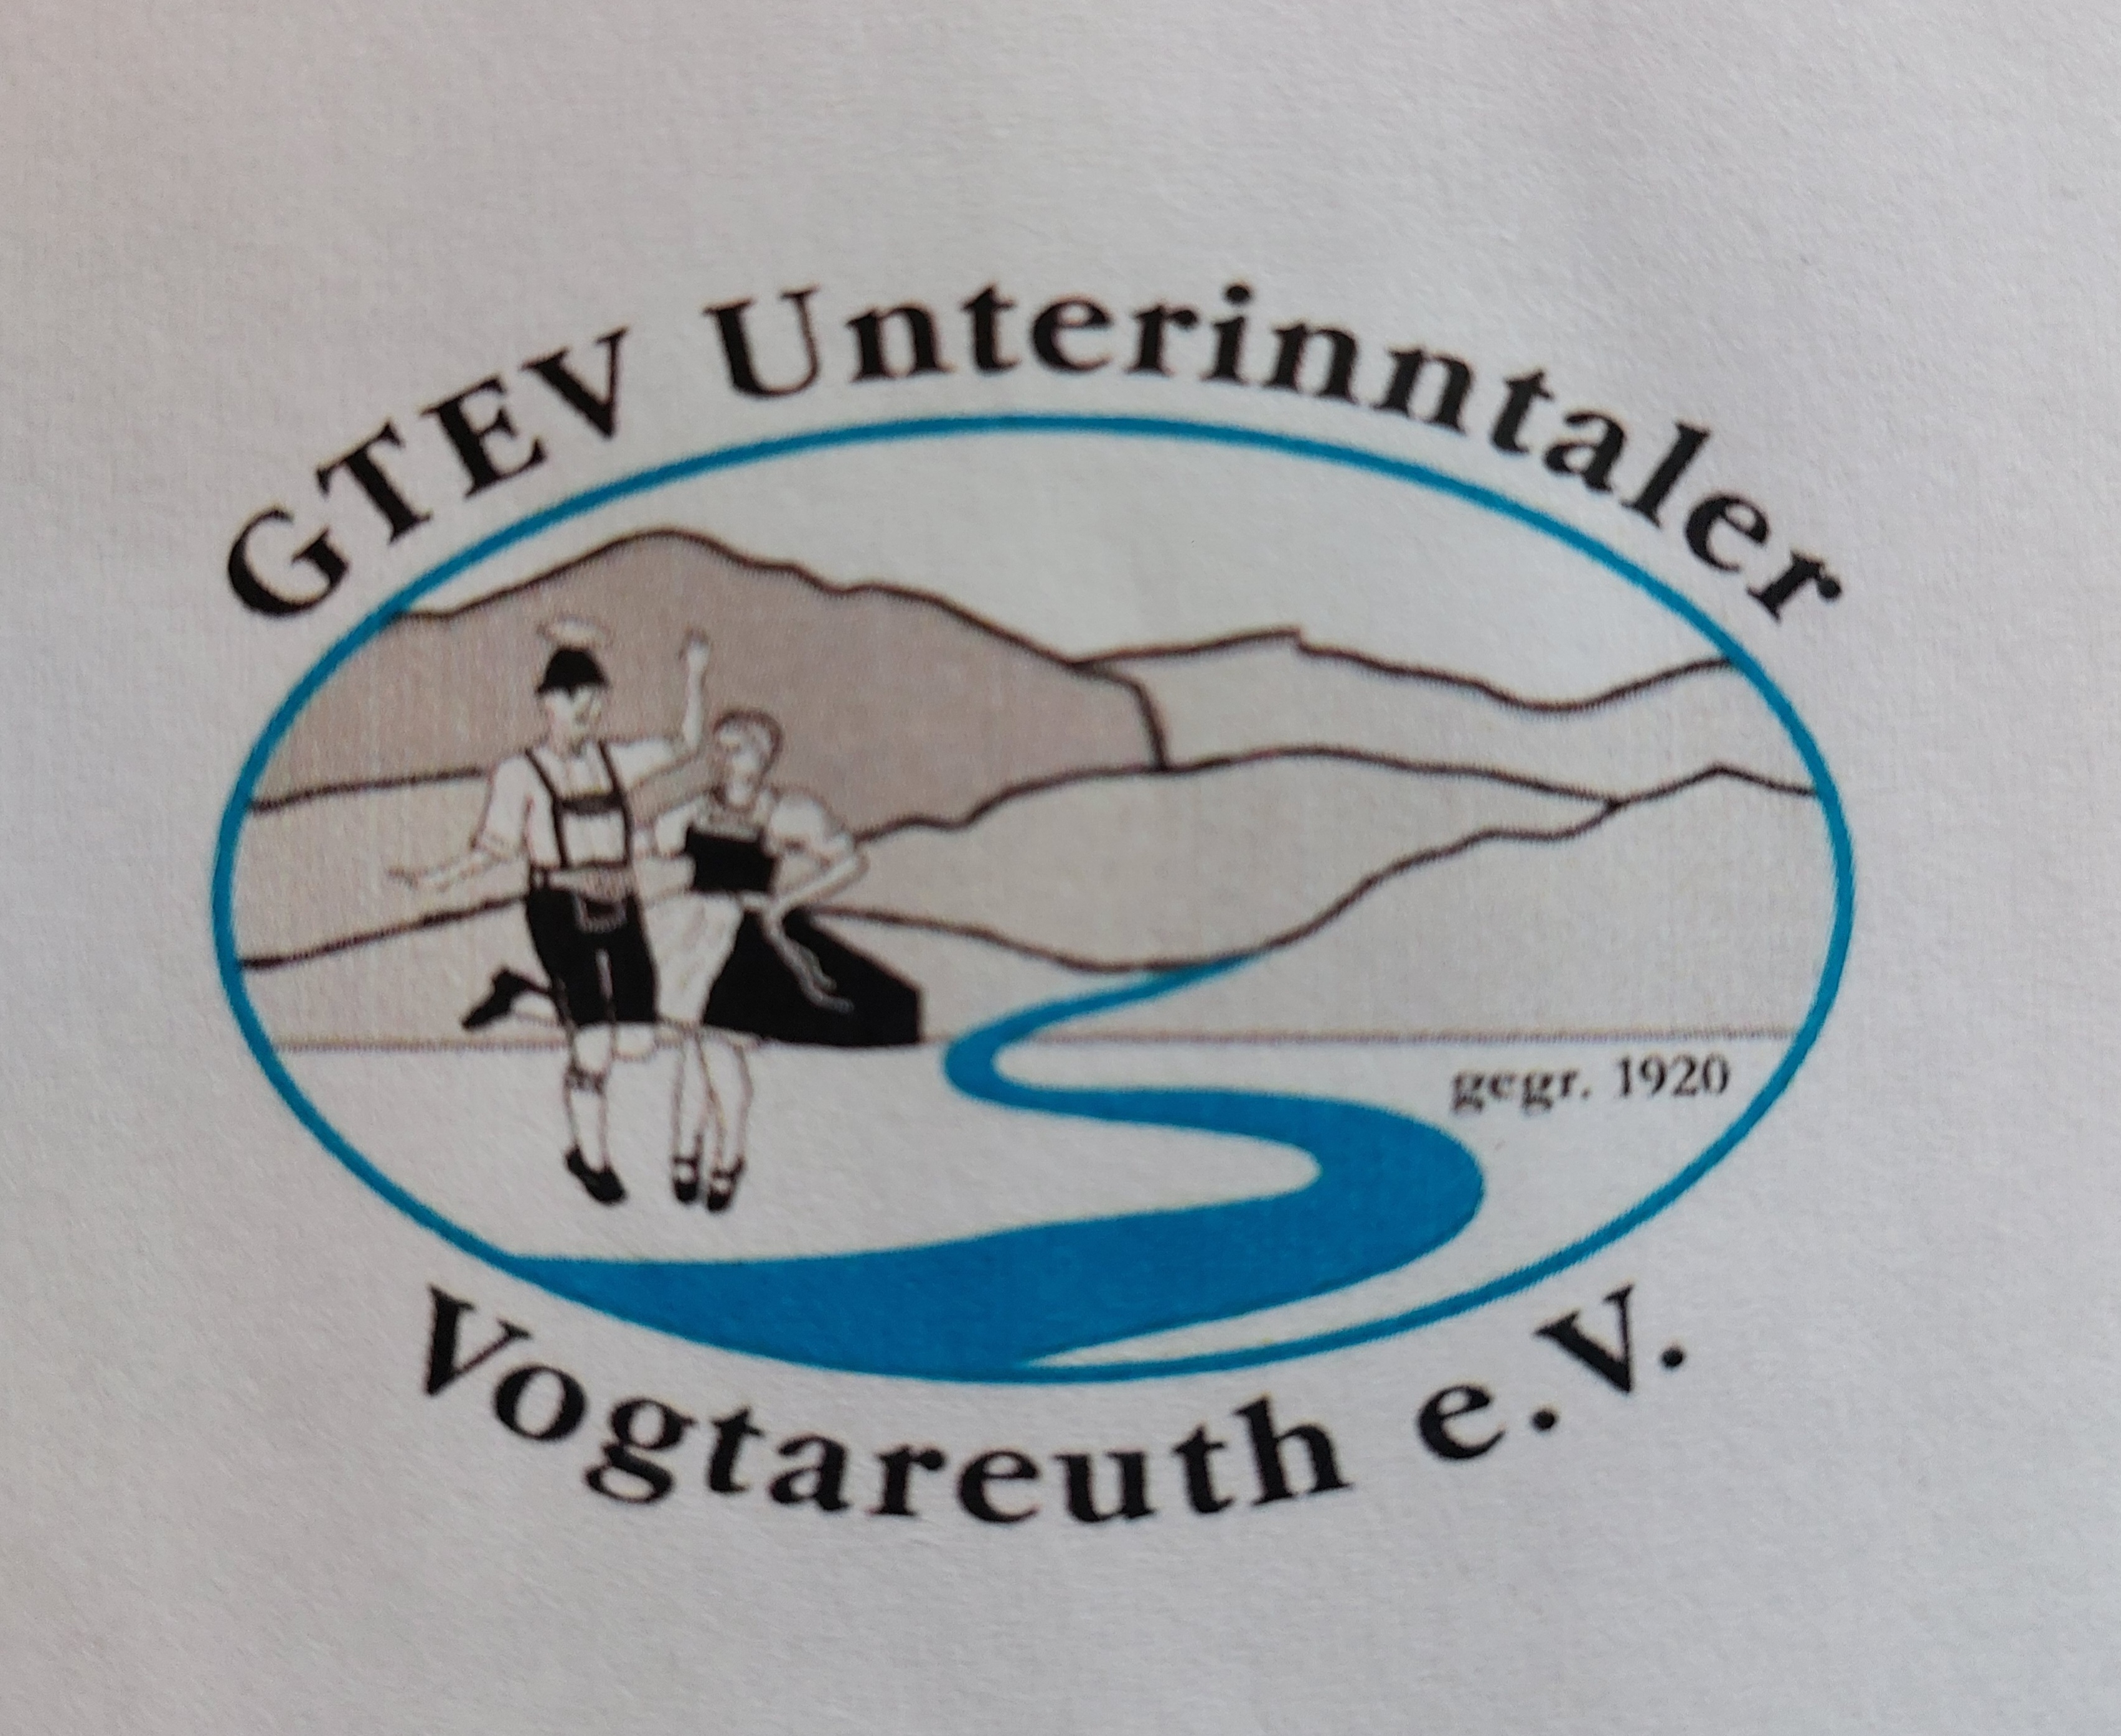 GTEV "Unterinntaler" Vogtareuth e.V.